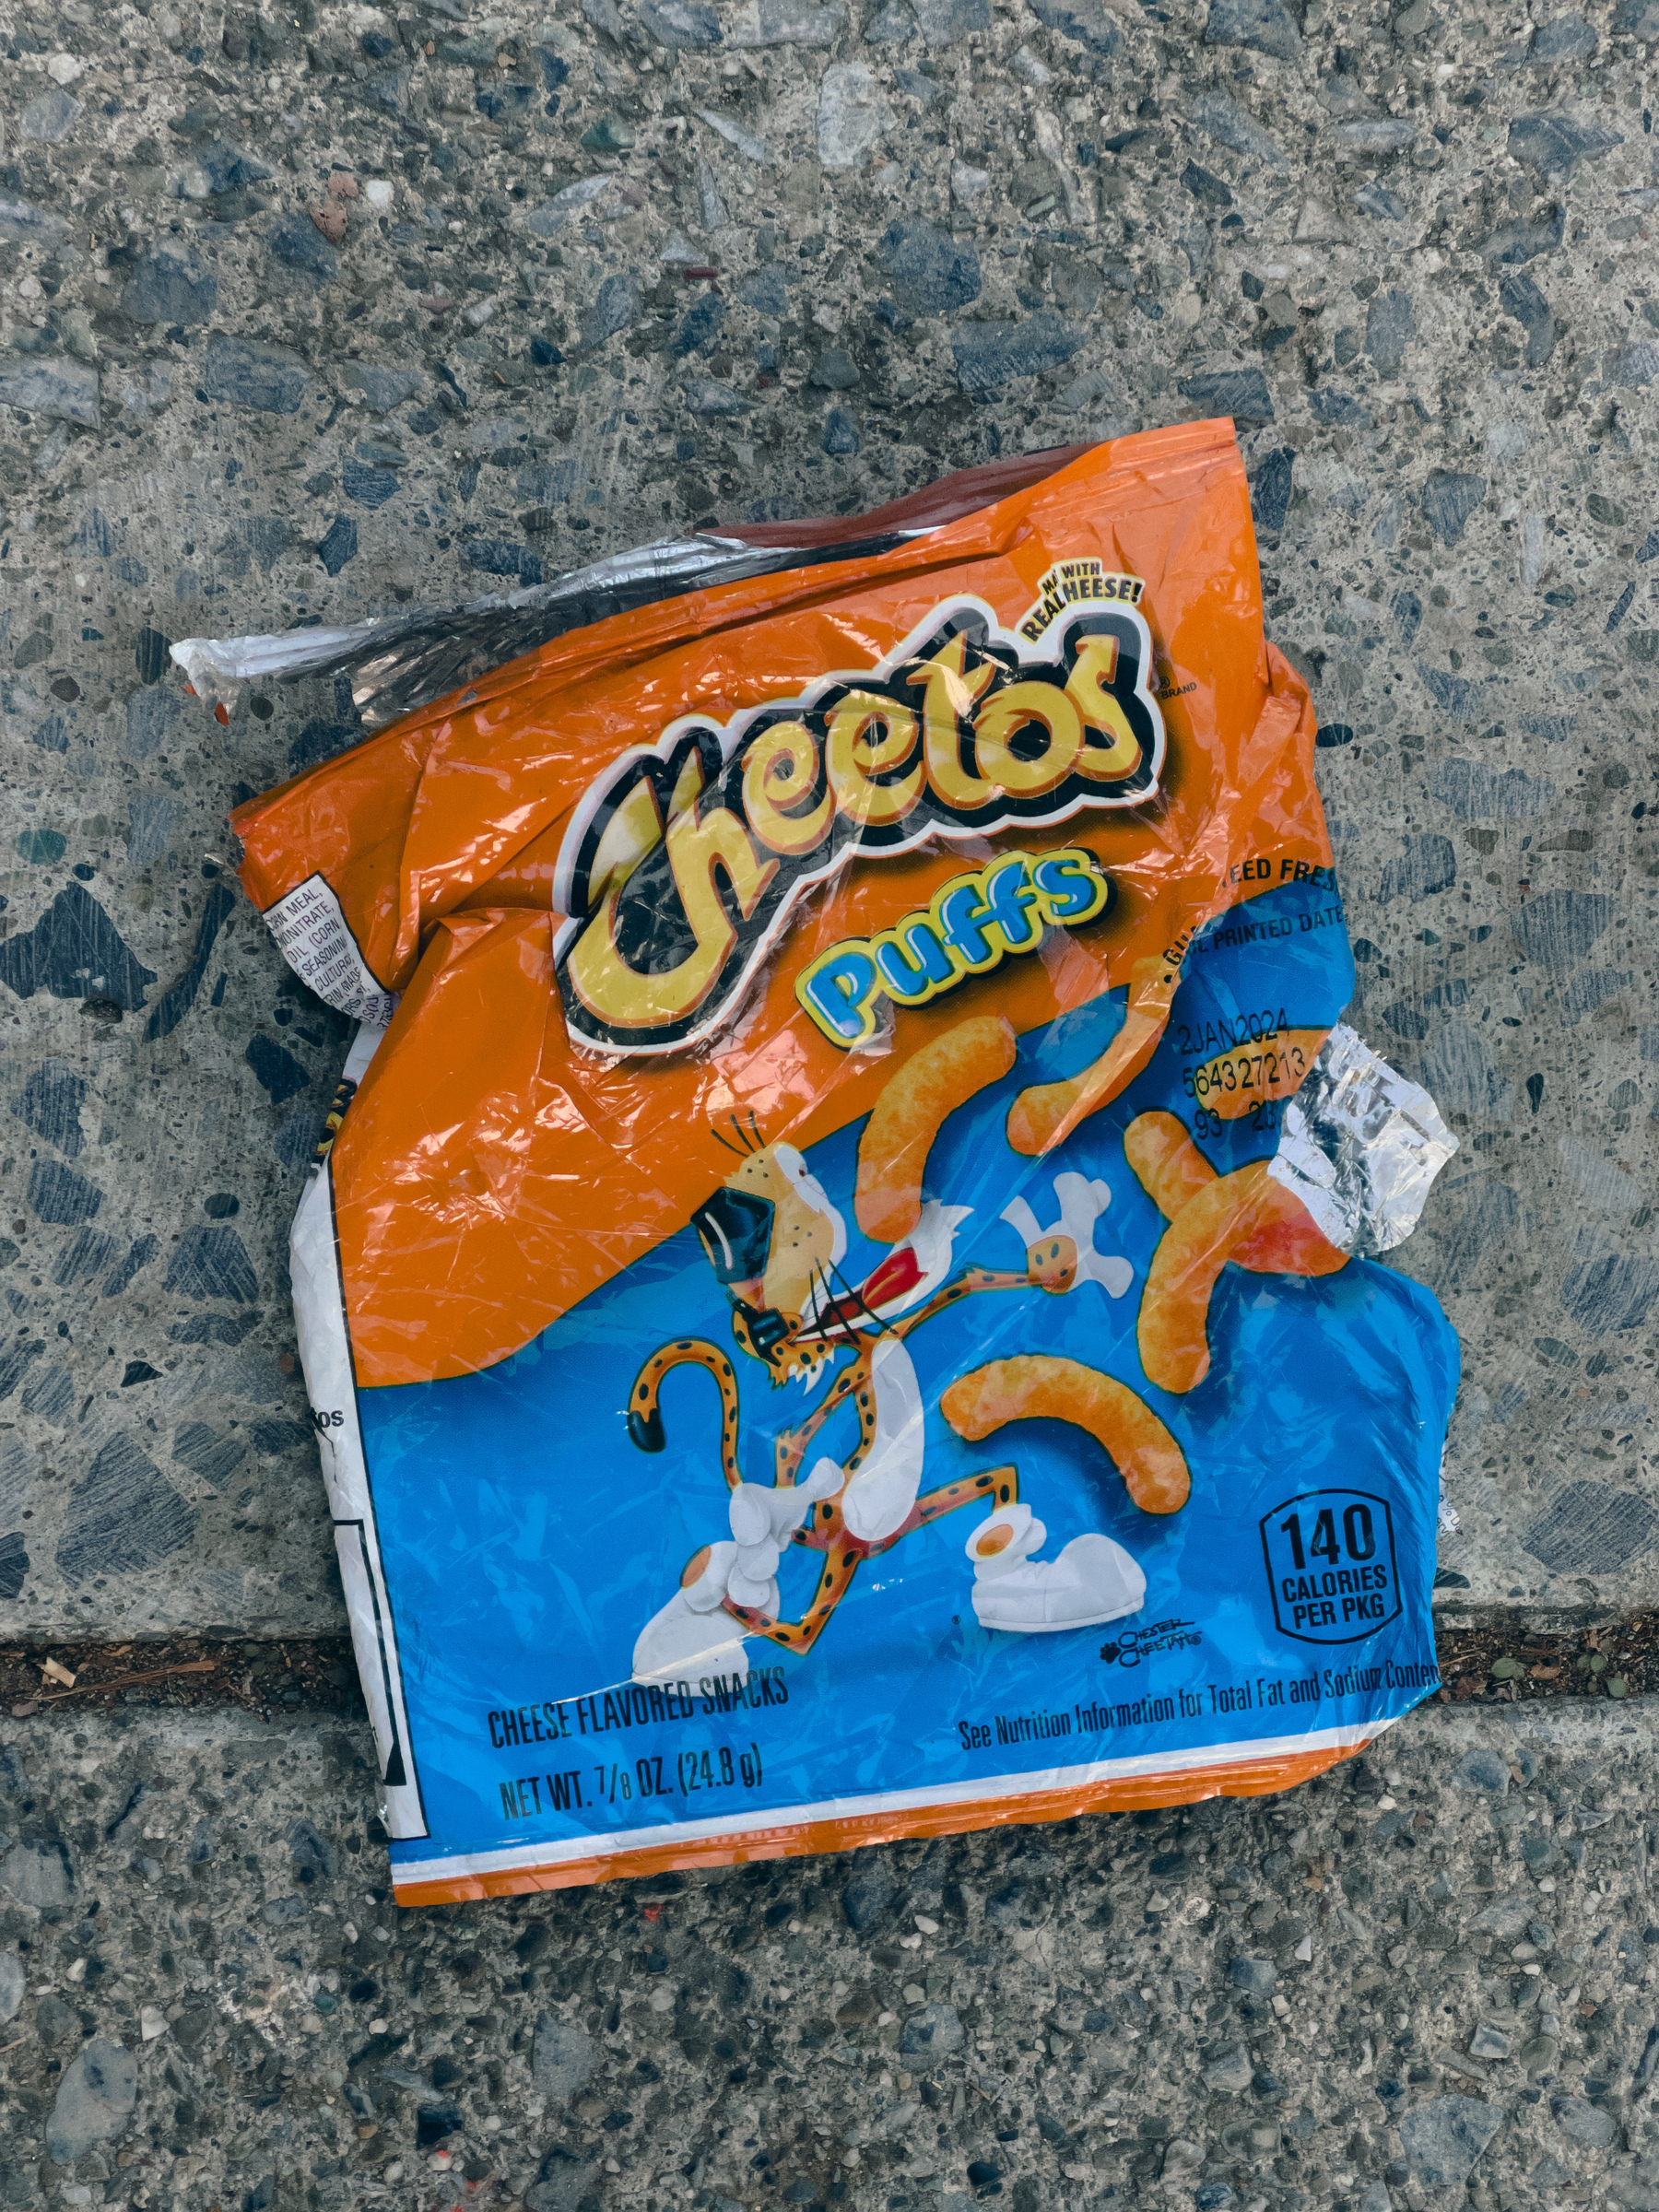 Cheetos Puffs bag lying on concrete sidewalk.